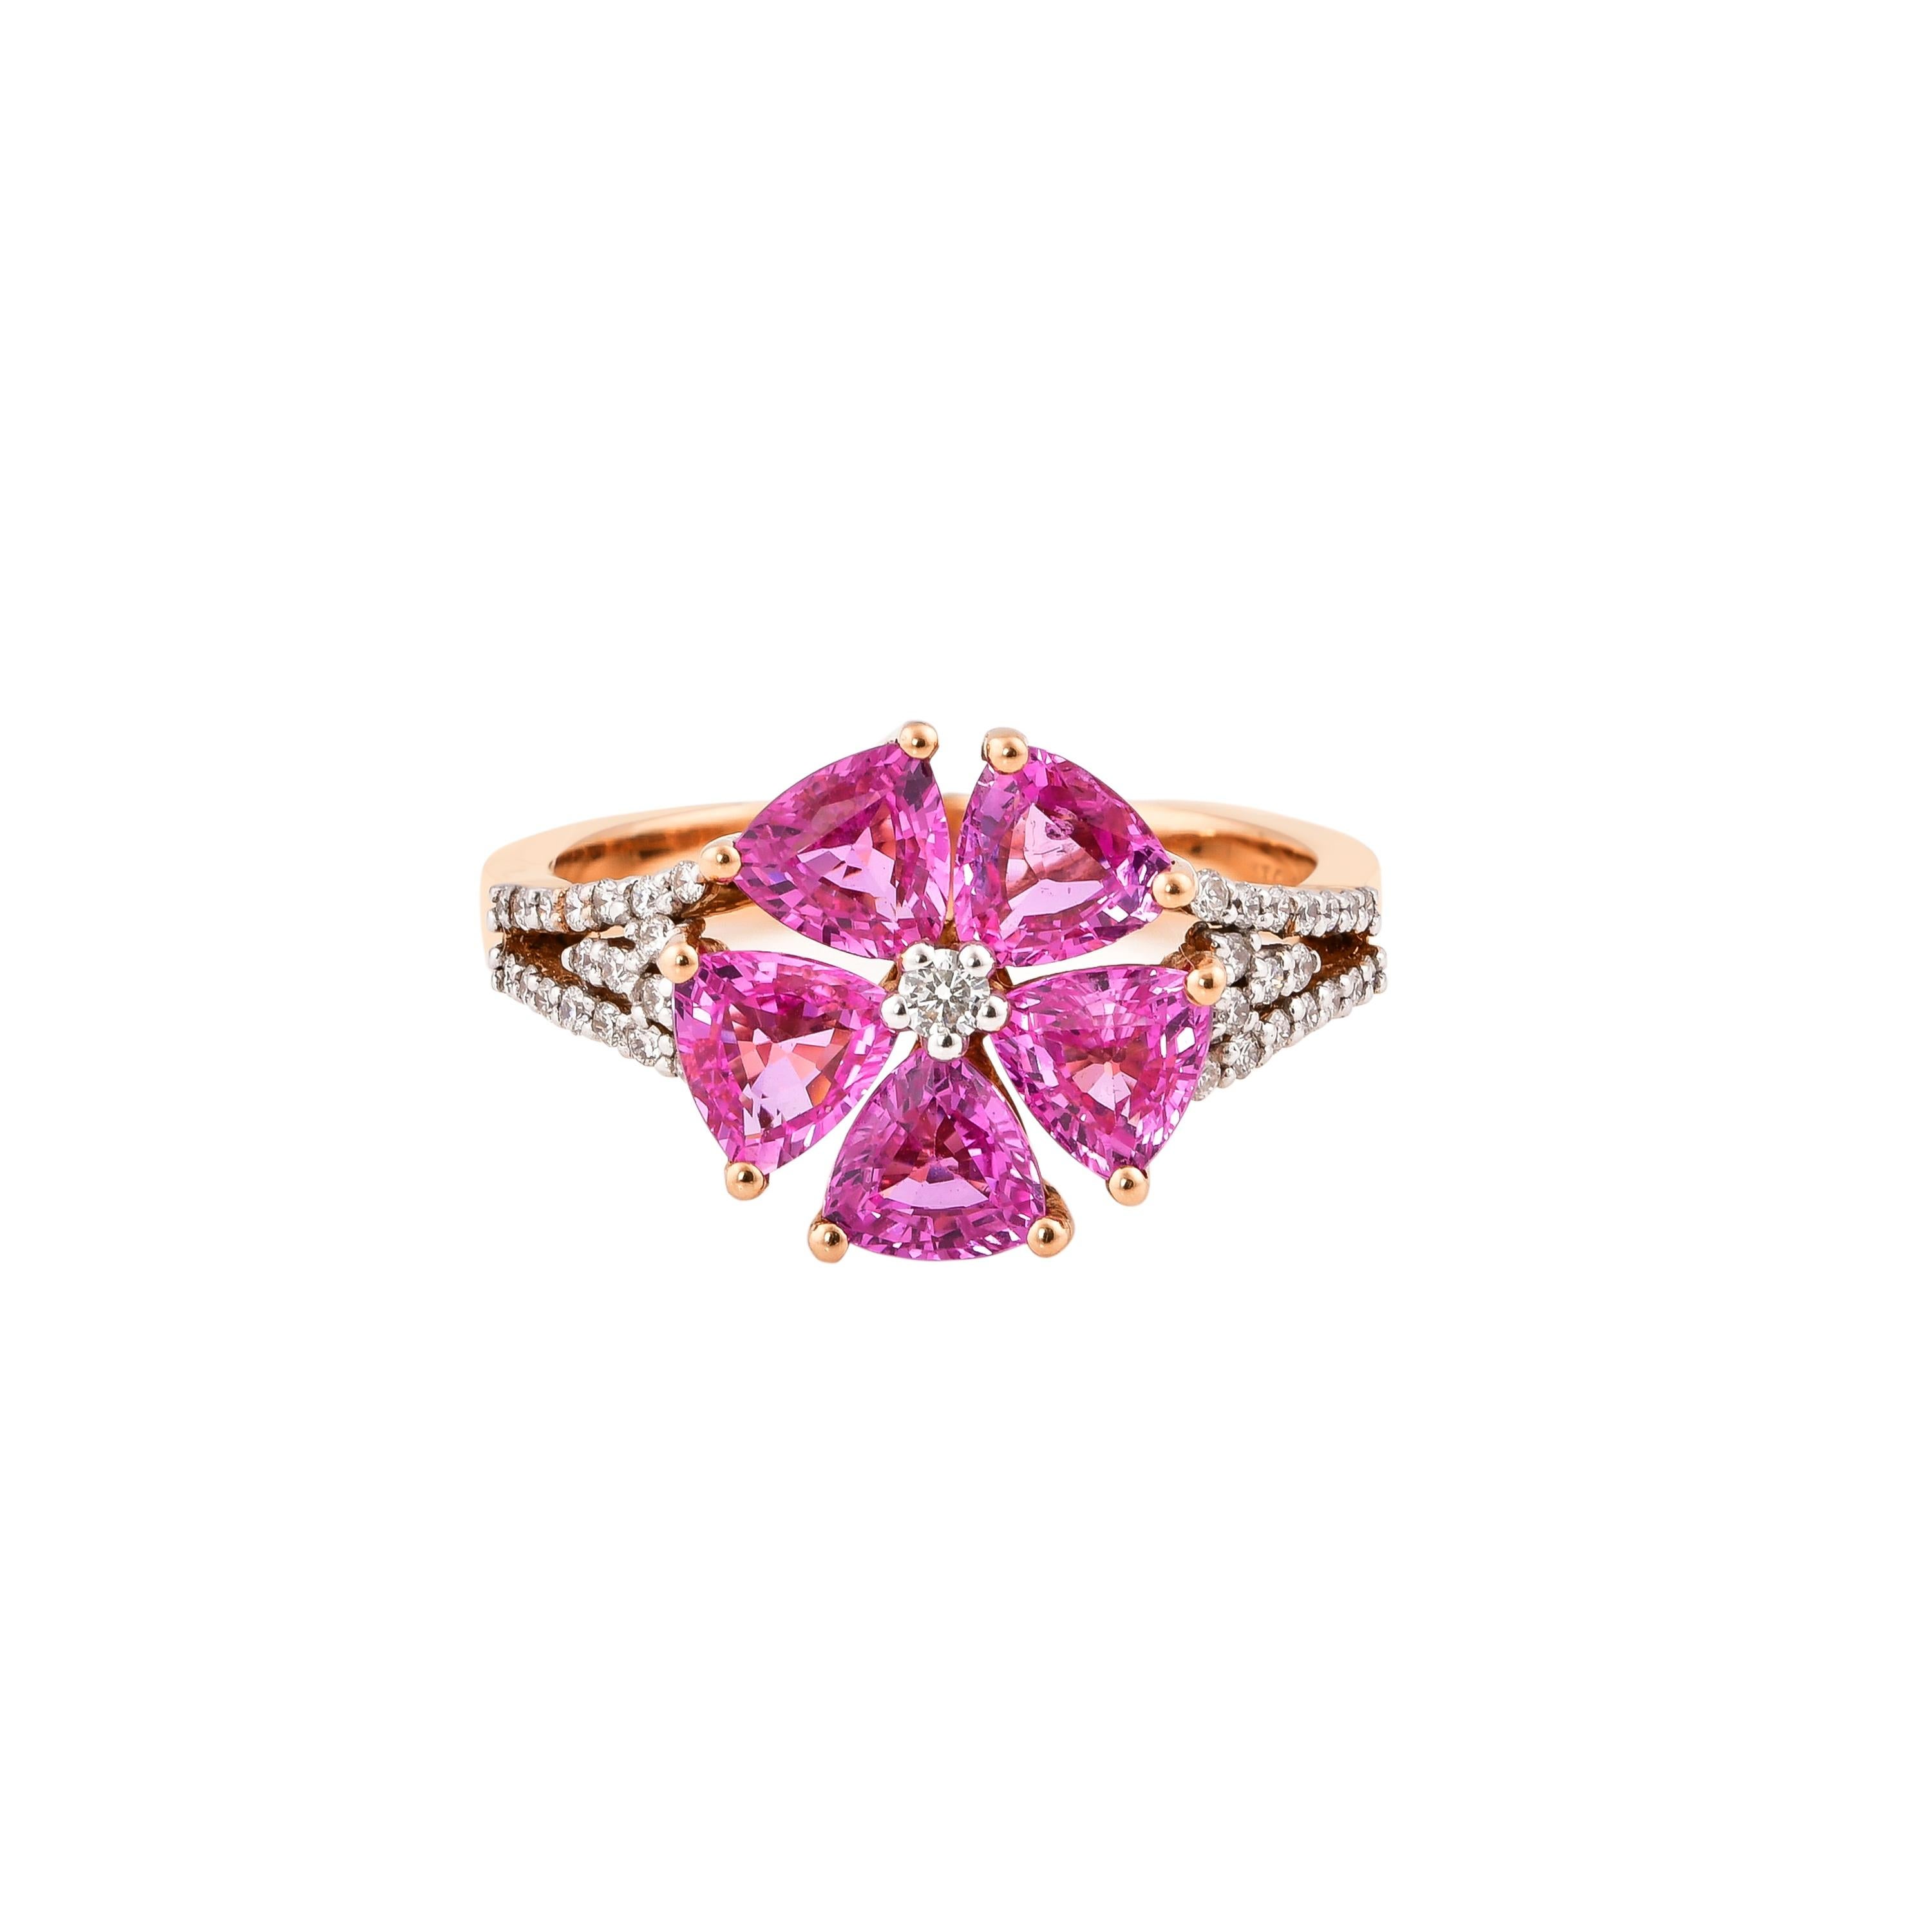 2.4 Carat Pink Sapphire Ring with Diamond in 18 Karat Rose Gold 1